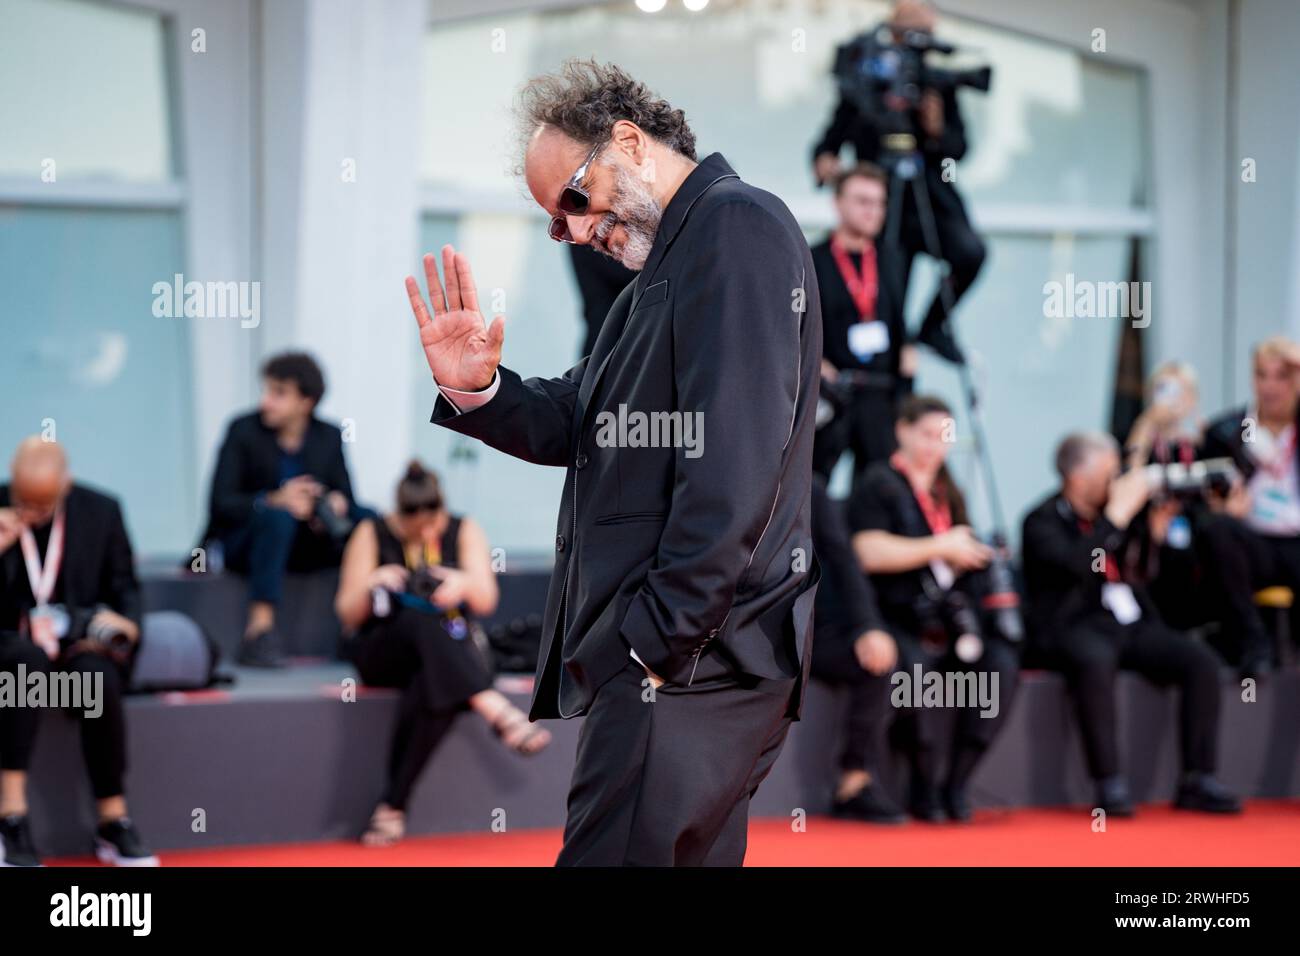 VENECIA, ITALIA - 05 DE SEPTIEMBRE: Luca Guadagnino asiste a una alfombra roja para la película 'Enea' en el 80º Festival Internacional de Cine de Venecia el 0 de septiembre Foto de stock